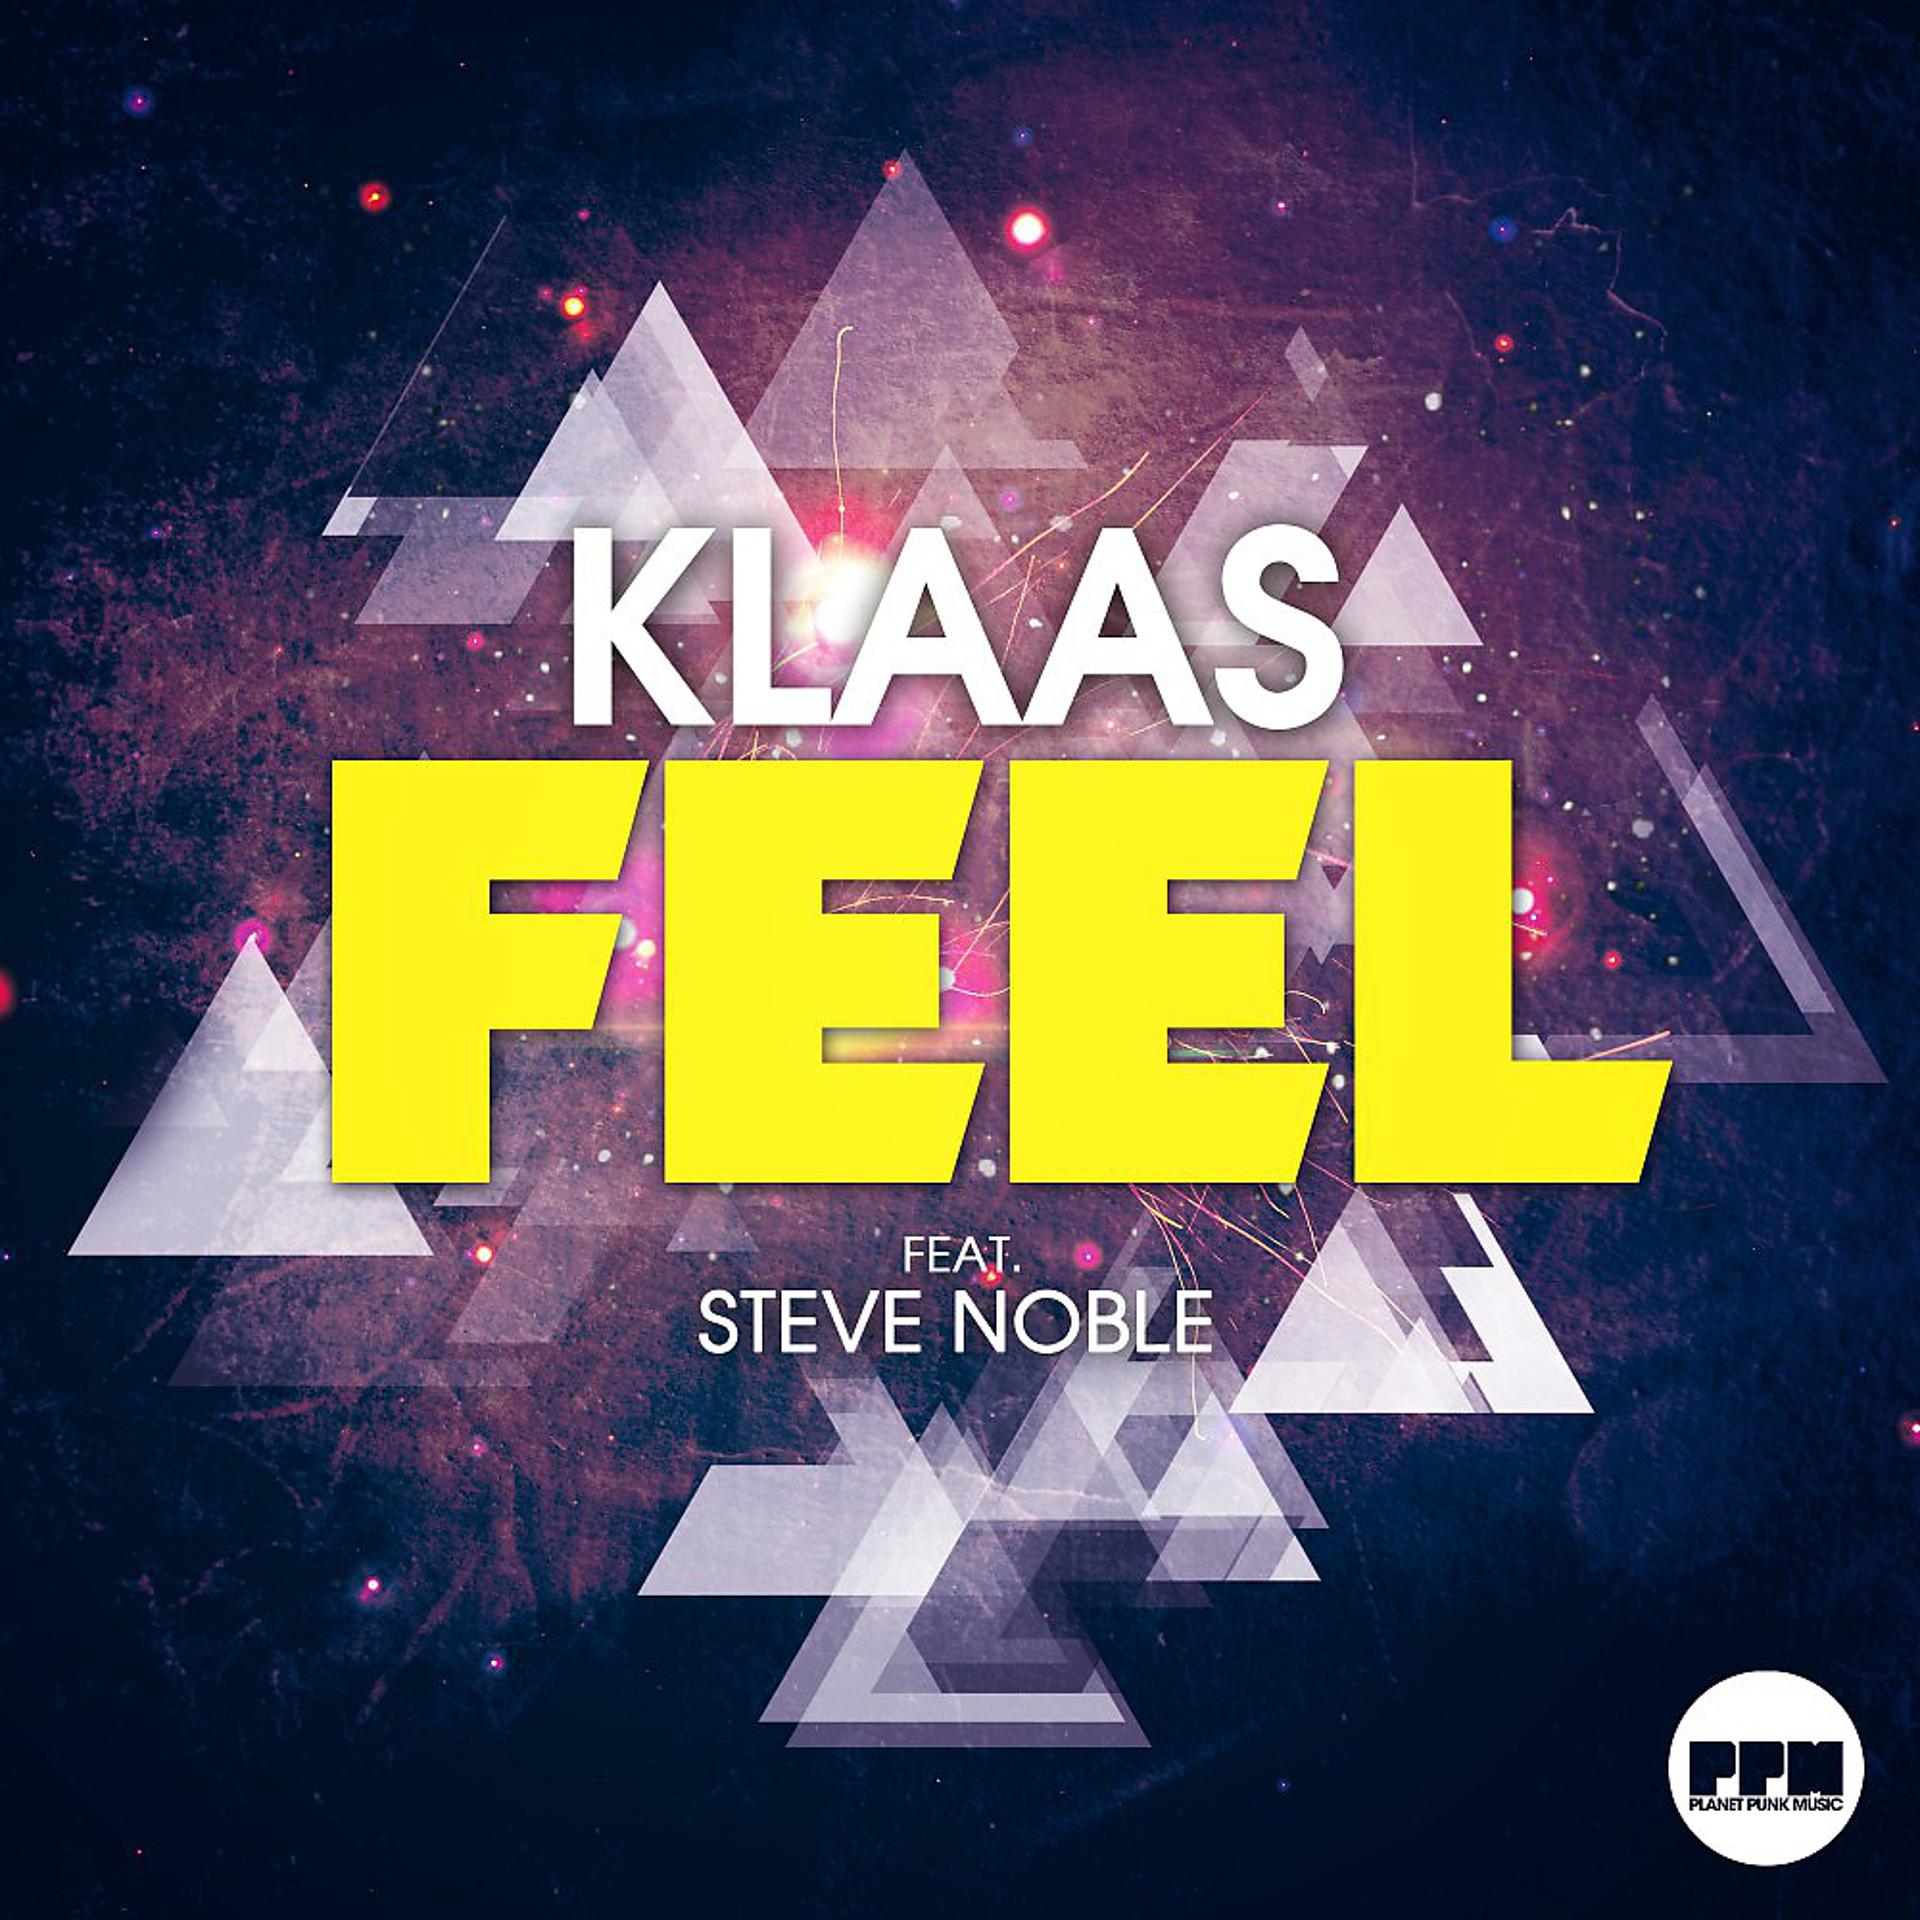 Klaas. Feat Steve. Klaas mp3. Klaas - Gravity.